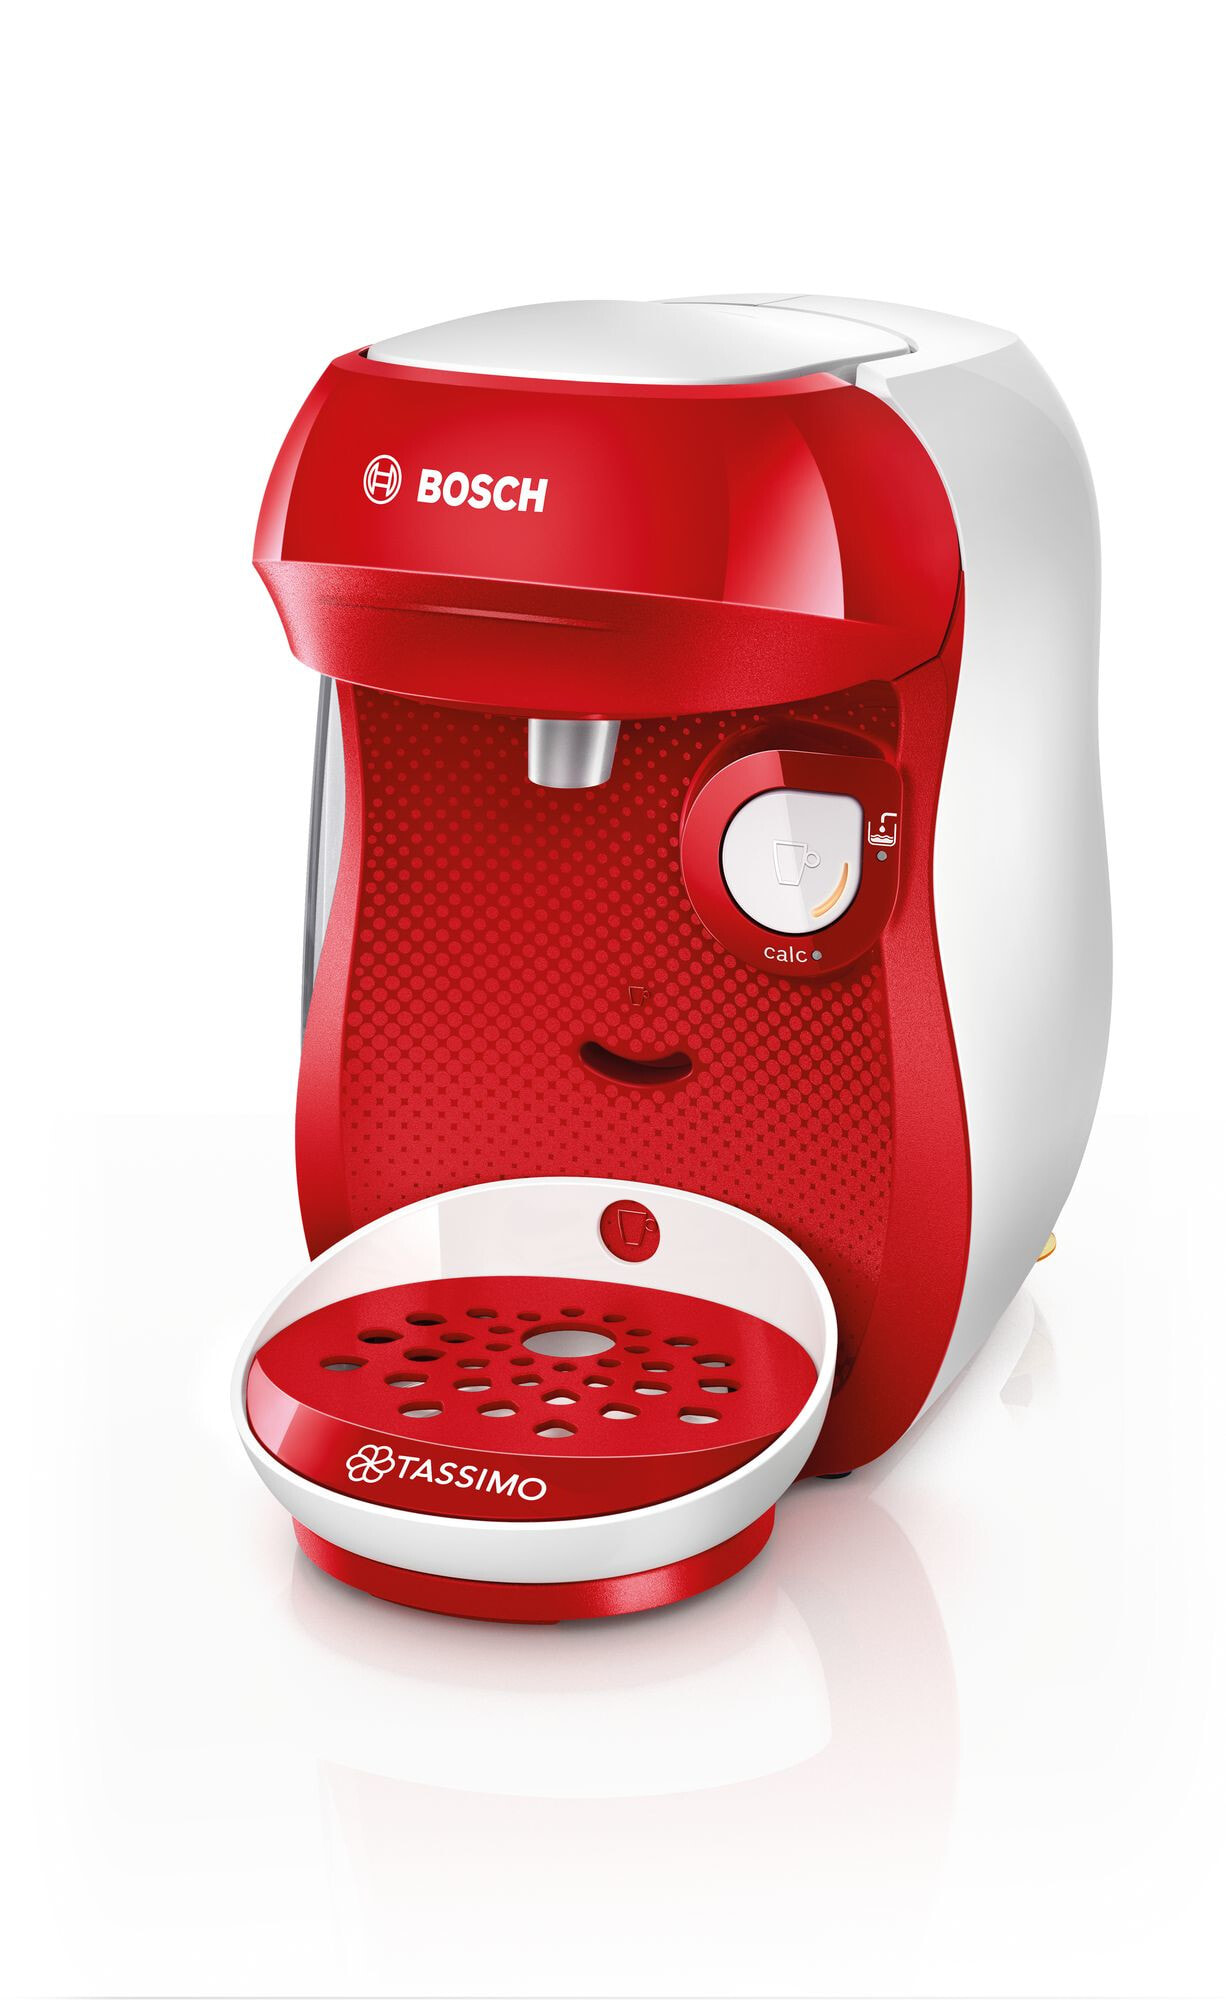 Bosch TAS1006 кофеварка Капсульная кофеварка 0,7 L Автоматическая